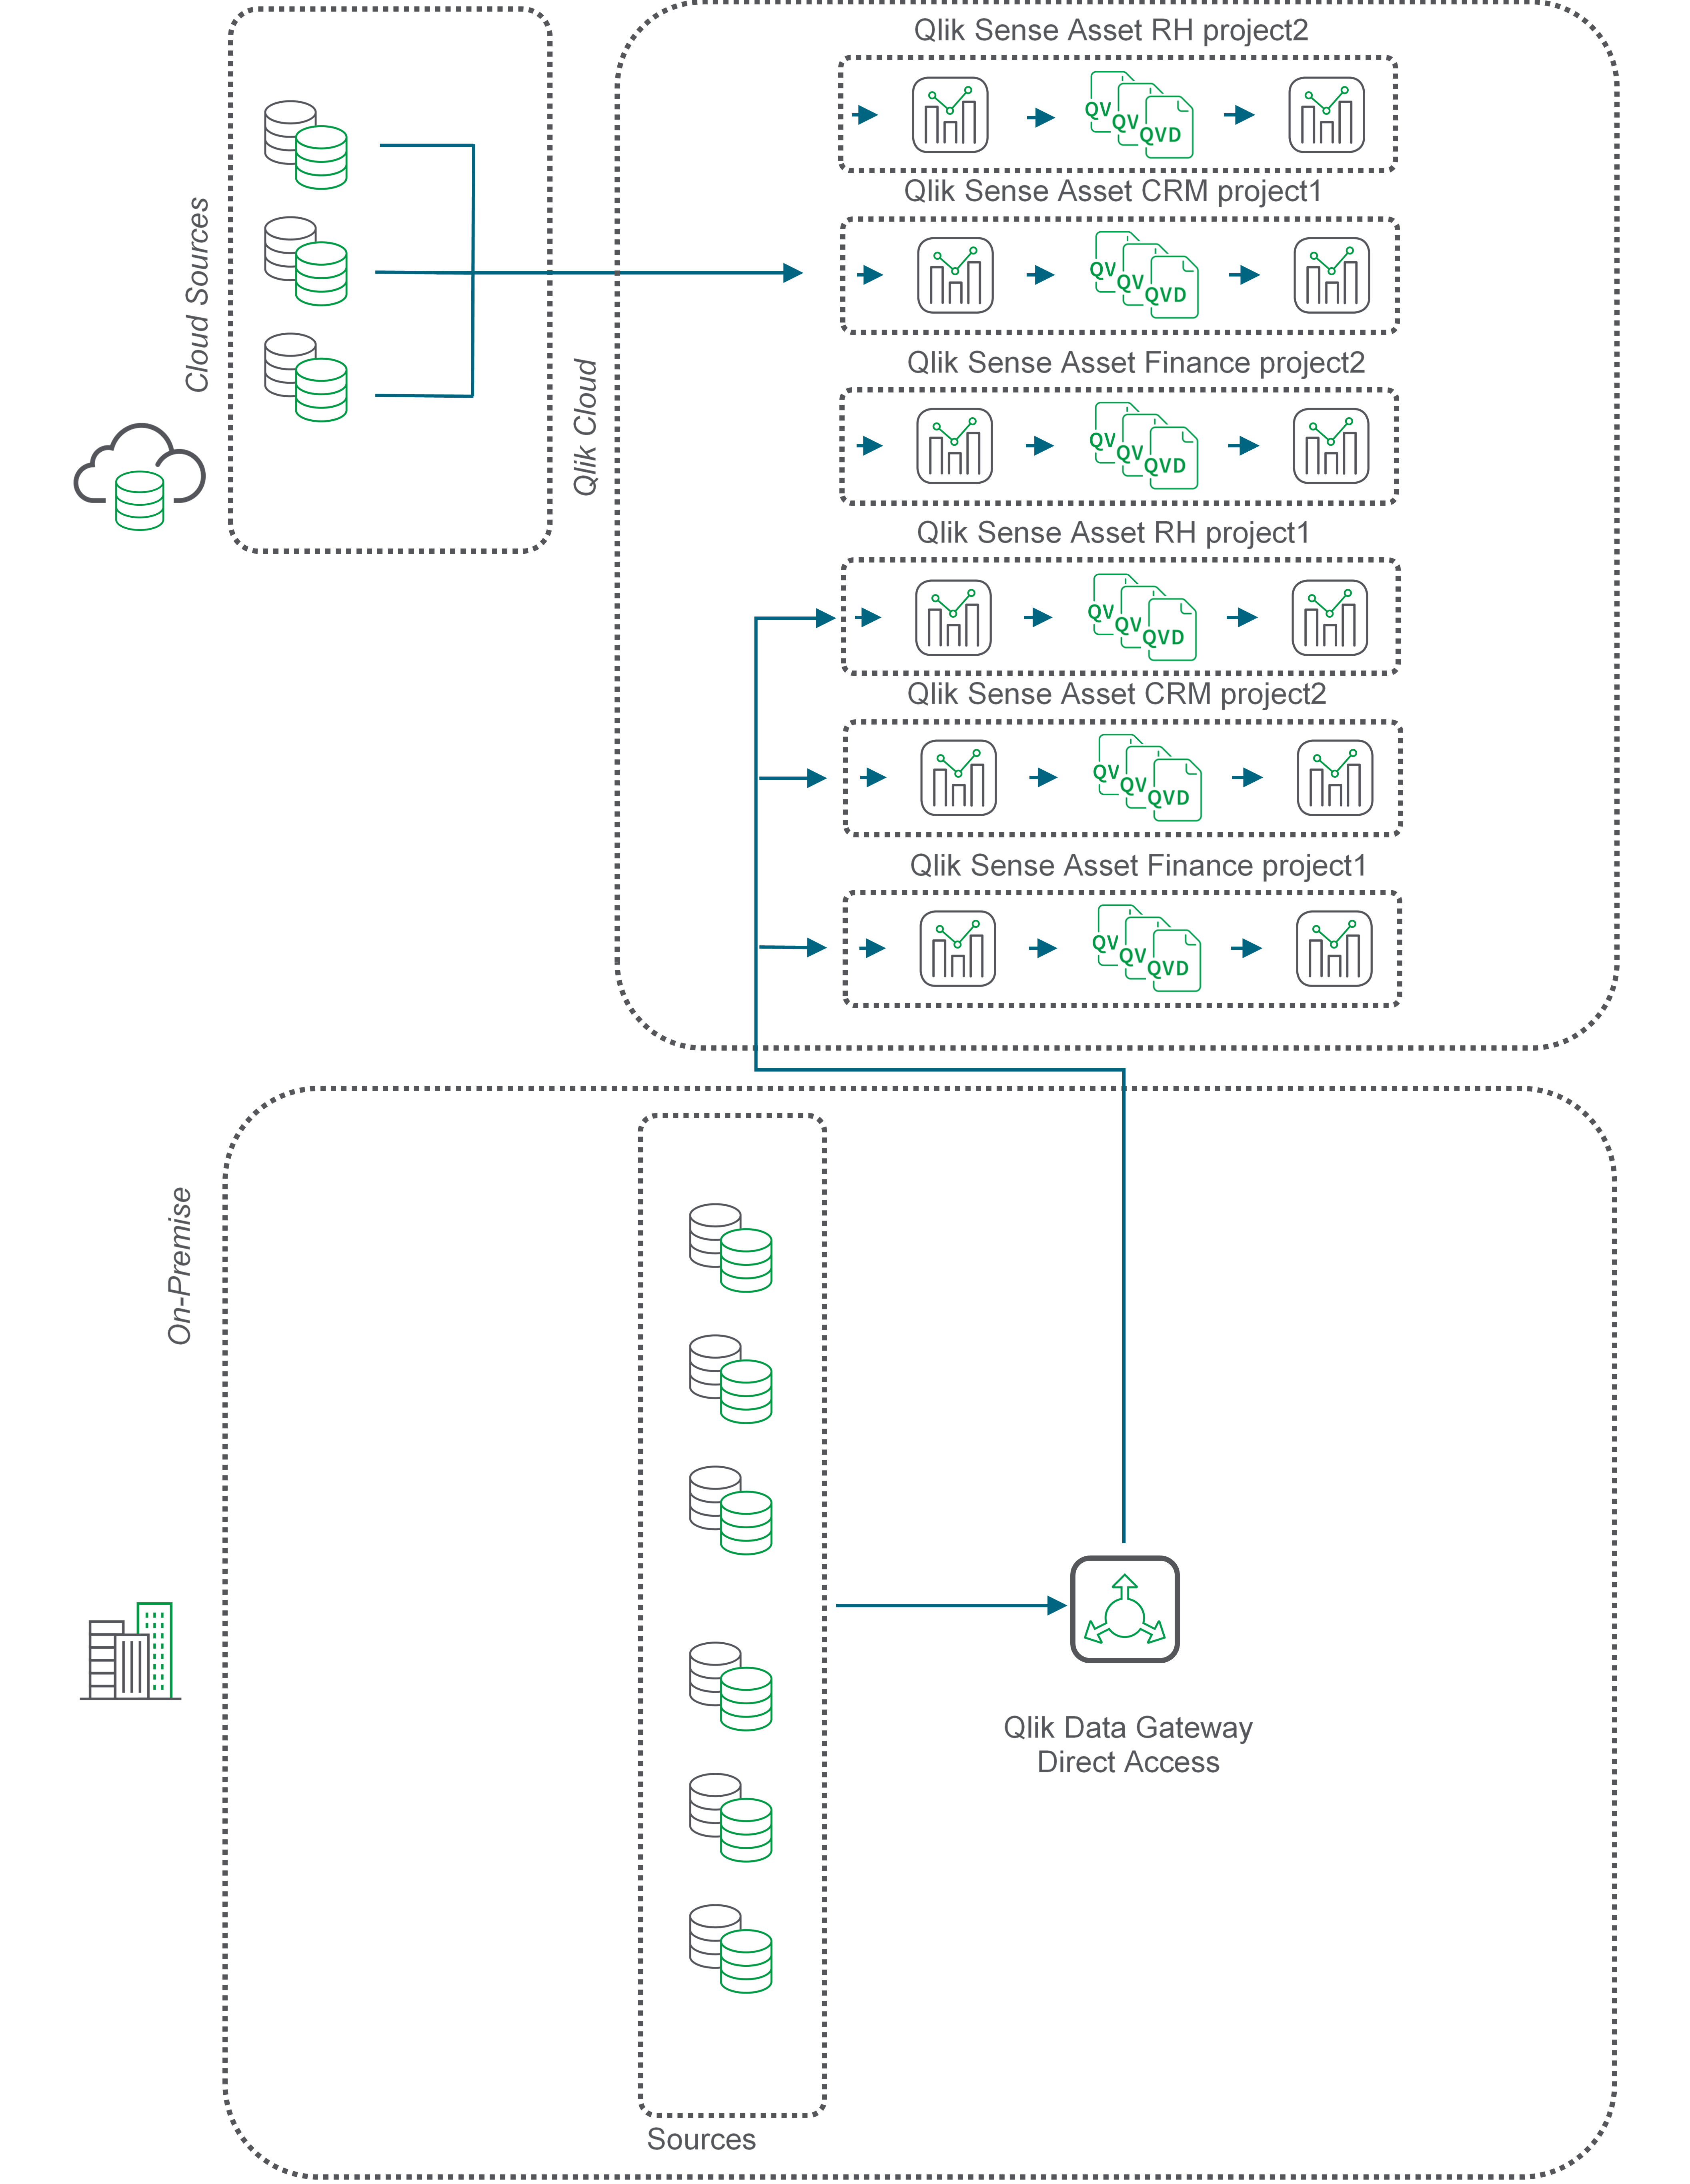 Schemat blokowy opisujący ruch QVD przy użyciu Bramy danych Qlik — Dostęp bezpośredni.